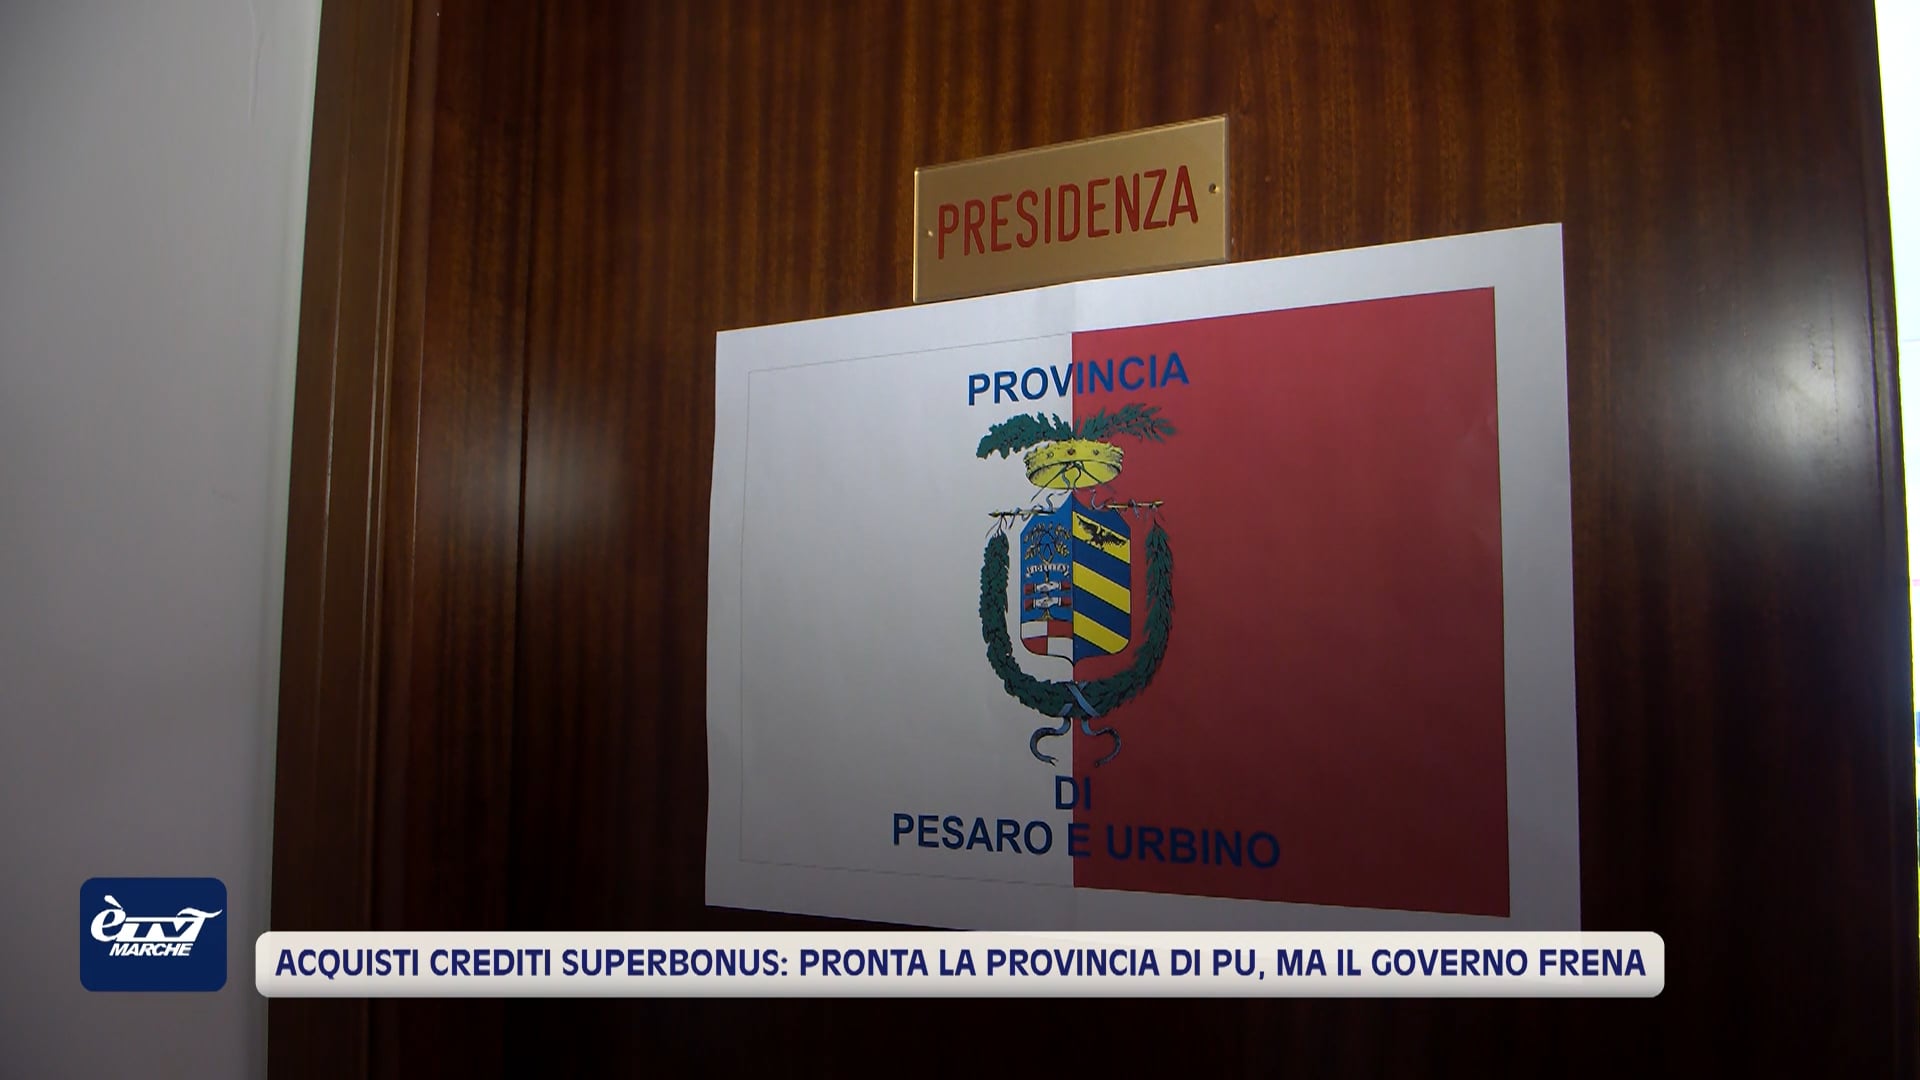 Acquisti crediti superbonus, la provincia di Pesaro Urbino si dice pronta ma il governo frena  - VIDEO